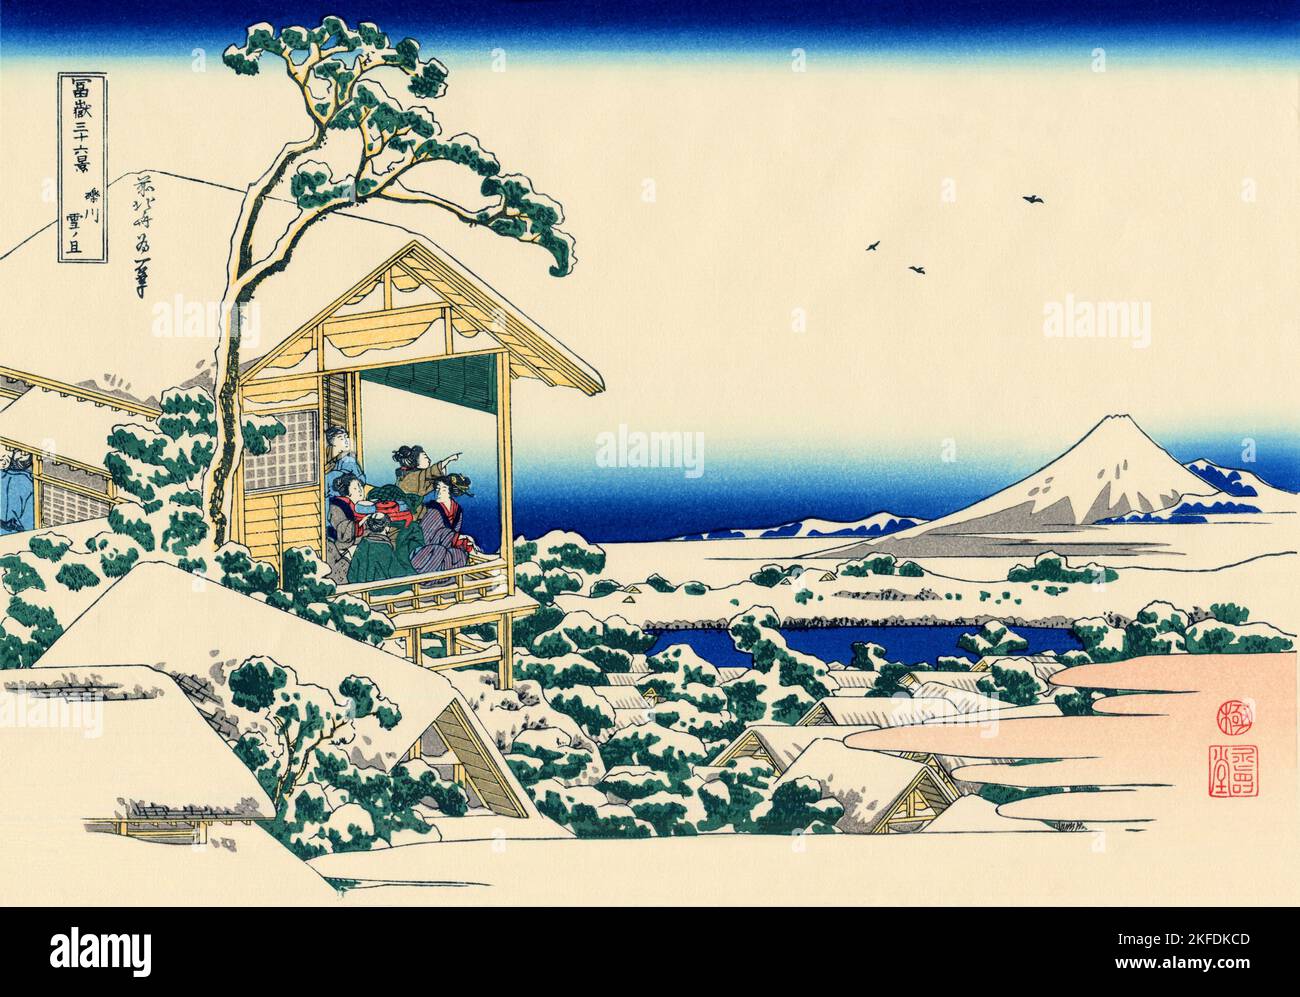 Japan: ‘Koishikawa am Morgen nach einem Schneefall’. Ukiyo-e Holzschnitt aus der Serie ‘Thirty-Six views of Mount Fuji’ von Katsushika Hokusai (31. Oktober 1760 - 10. Mai 1849), 1830. ‘Thirty-Six Views of Mount Fuji’ ist eine Serie von Holzschnitten der japanischen Künstlerin Katsushika Hokusai, die „Sukiyo-e“ ‘. Die Serie zeigt den Fuji in unterschiedlichen Jahreszeiten und Wetterbedingungen an verschiedenen Orten und Entfernungen. Es besteht tatsächlich aus 46 Drucken, die zwischen 1826 und 1833 entstanden sind. Die ersten 36 wurden in die ursprüngliche Publikation aufgenommen und aufgrund ihrer Popularität kamen 10 weitere hinzu. Stockfoto